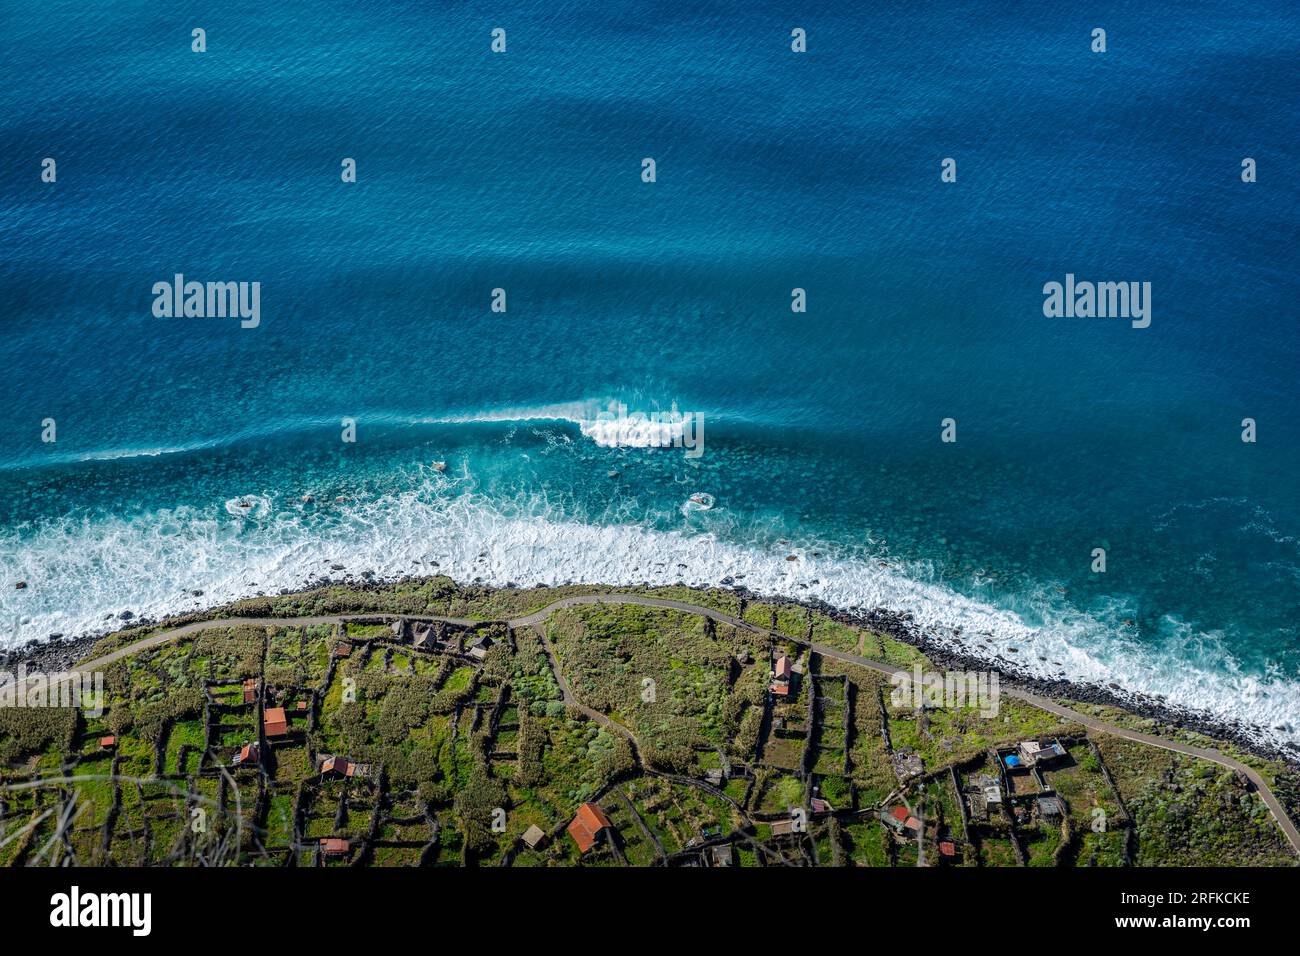 Villaggio costiero sull'oceano Atlantico Foto Stock